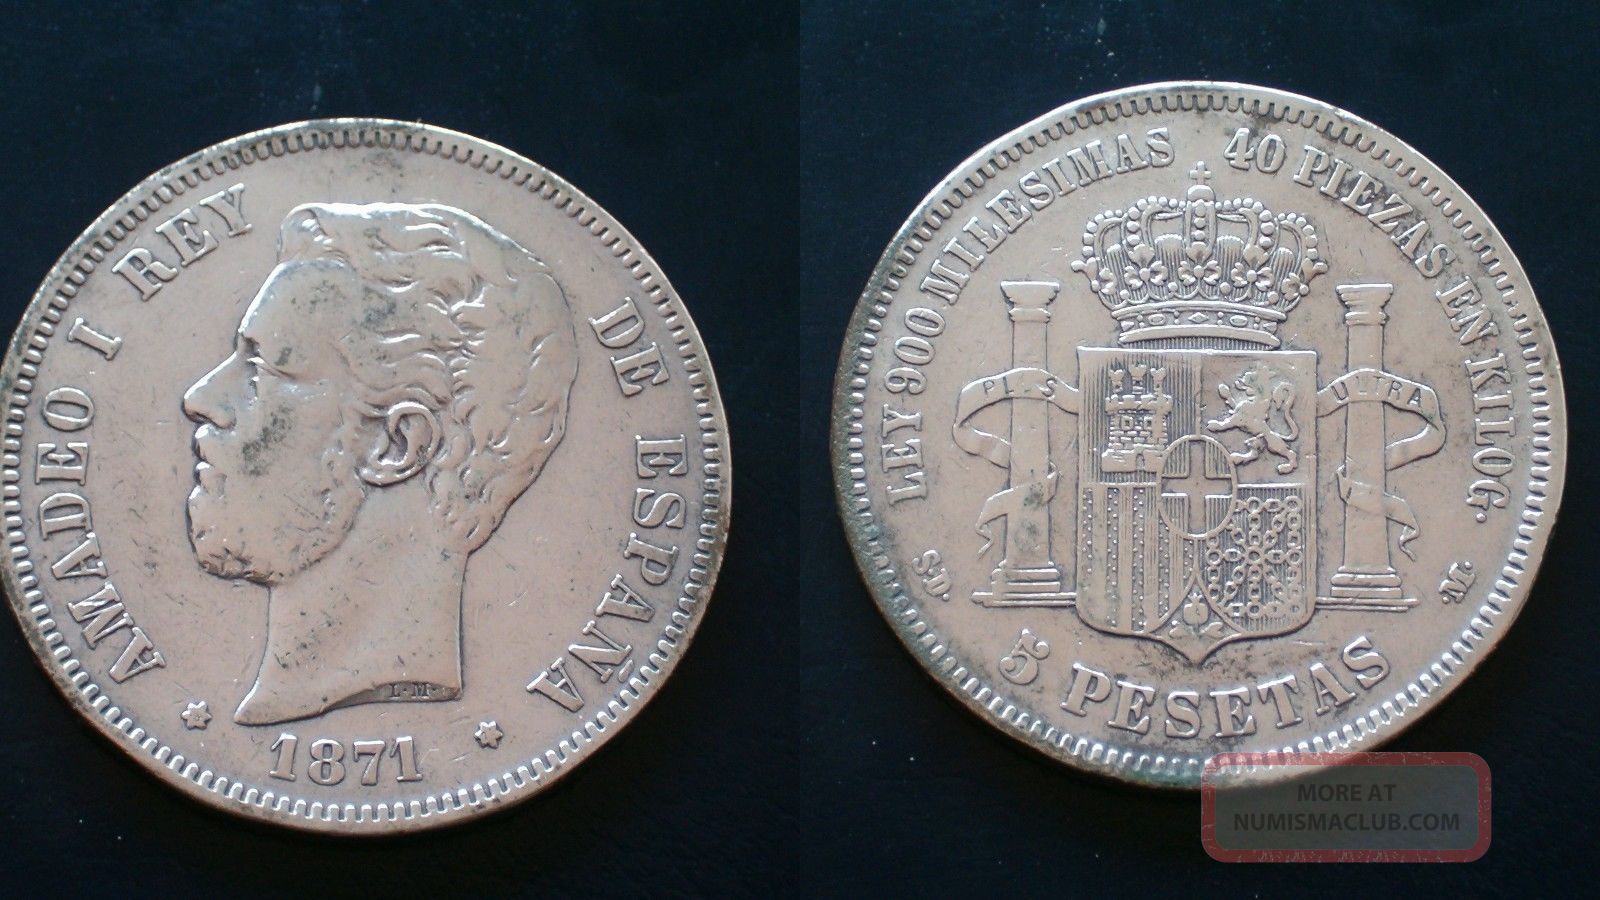 Spain / 1871 - 5 Pesetas / Silver Coin